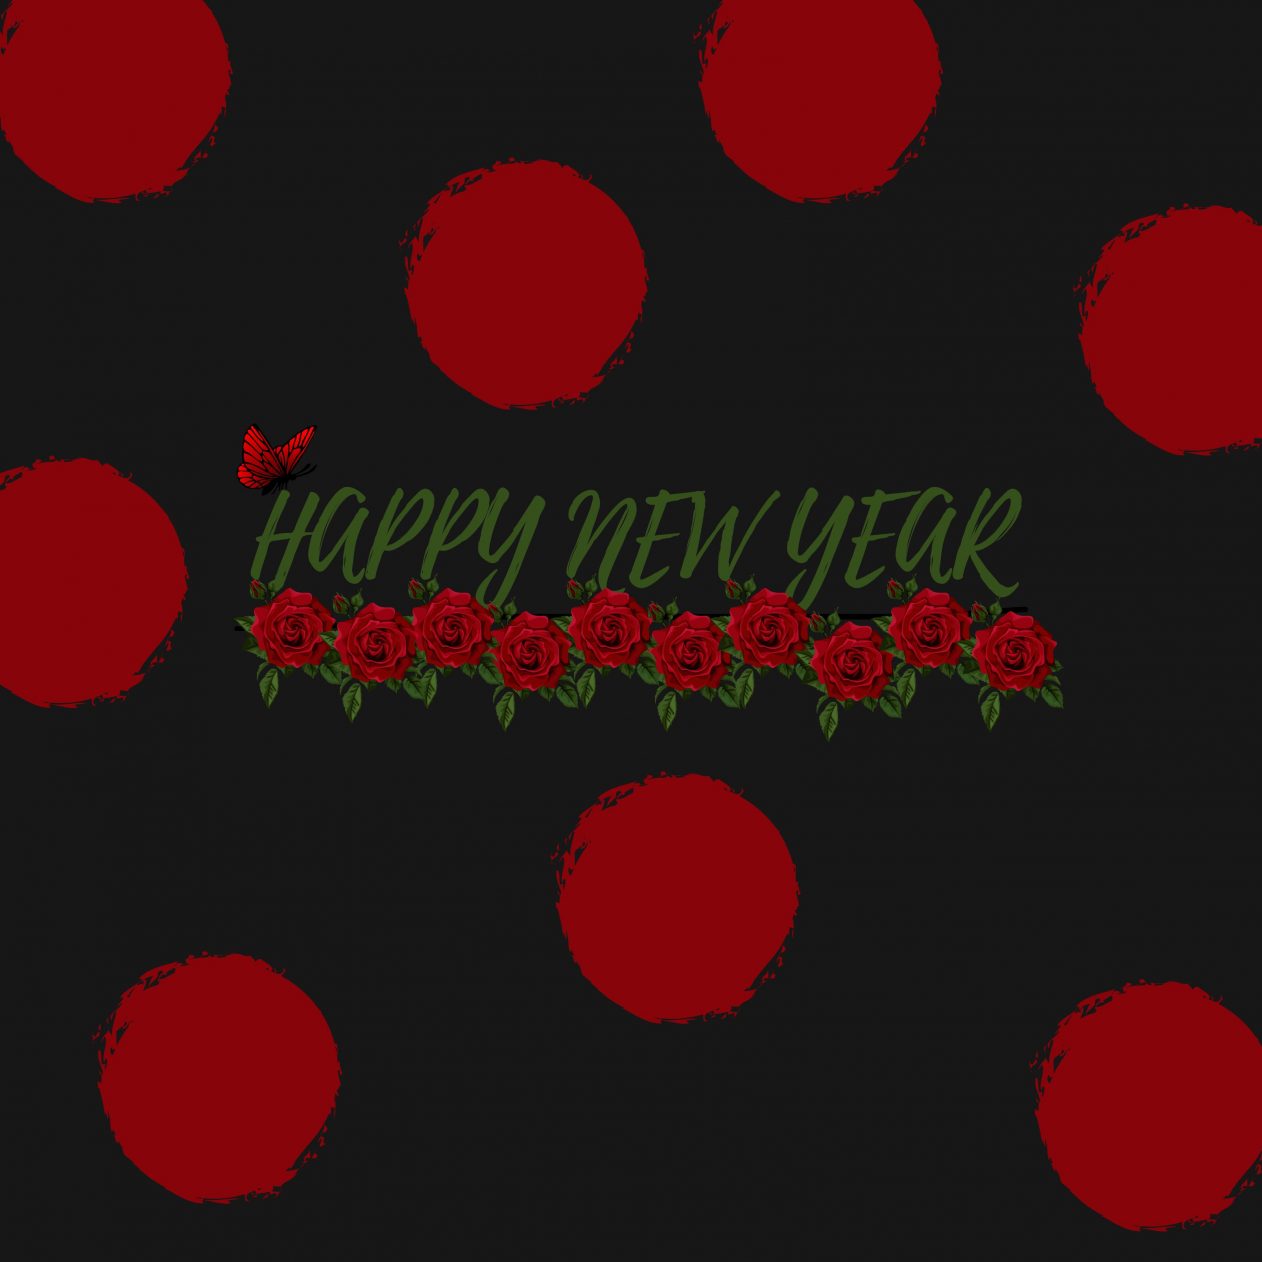 1262x1262 Parallax wallpaper 4k Red Poka Dot New Year Ipad Wallpaper 1262x1262 pixels resolution